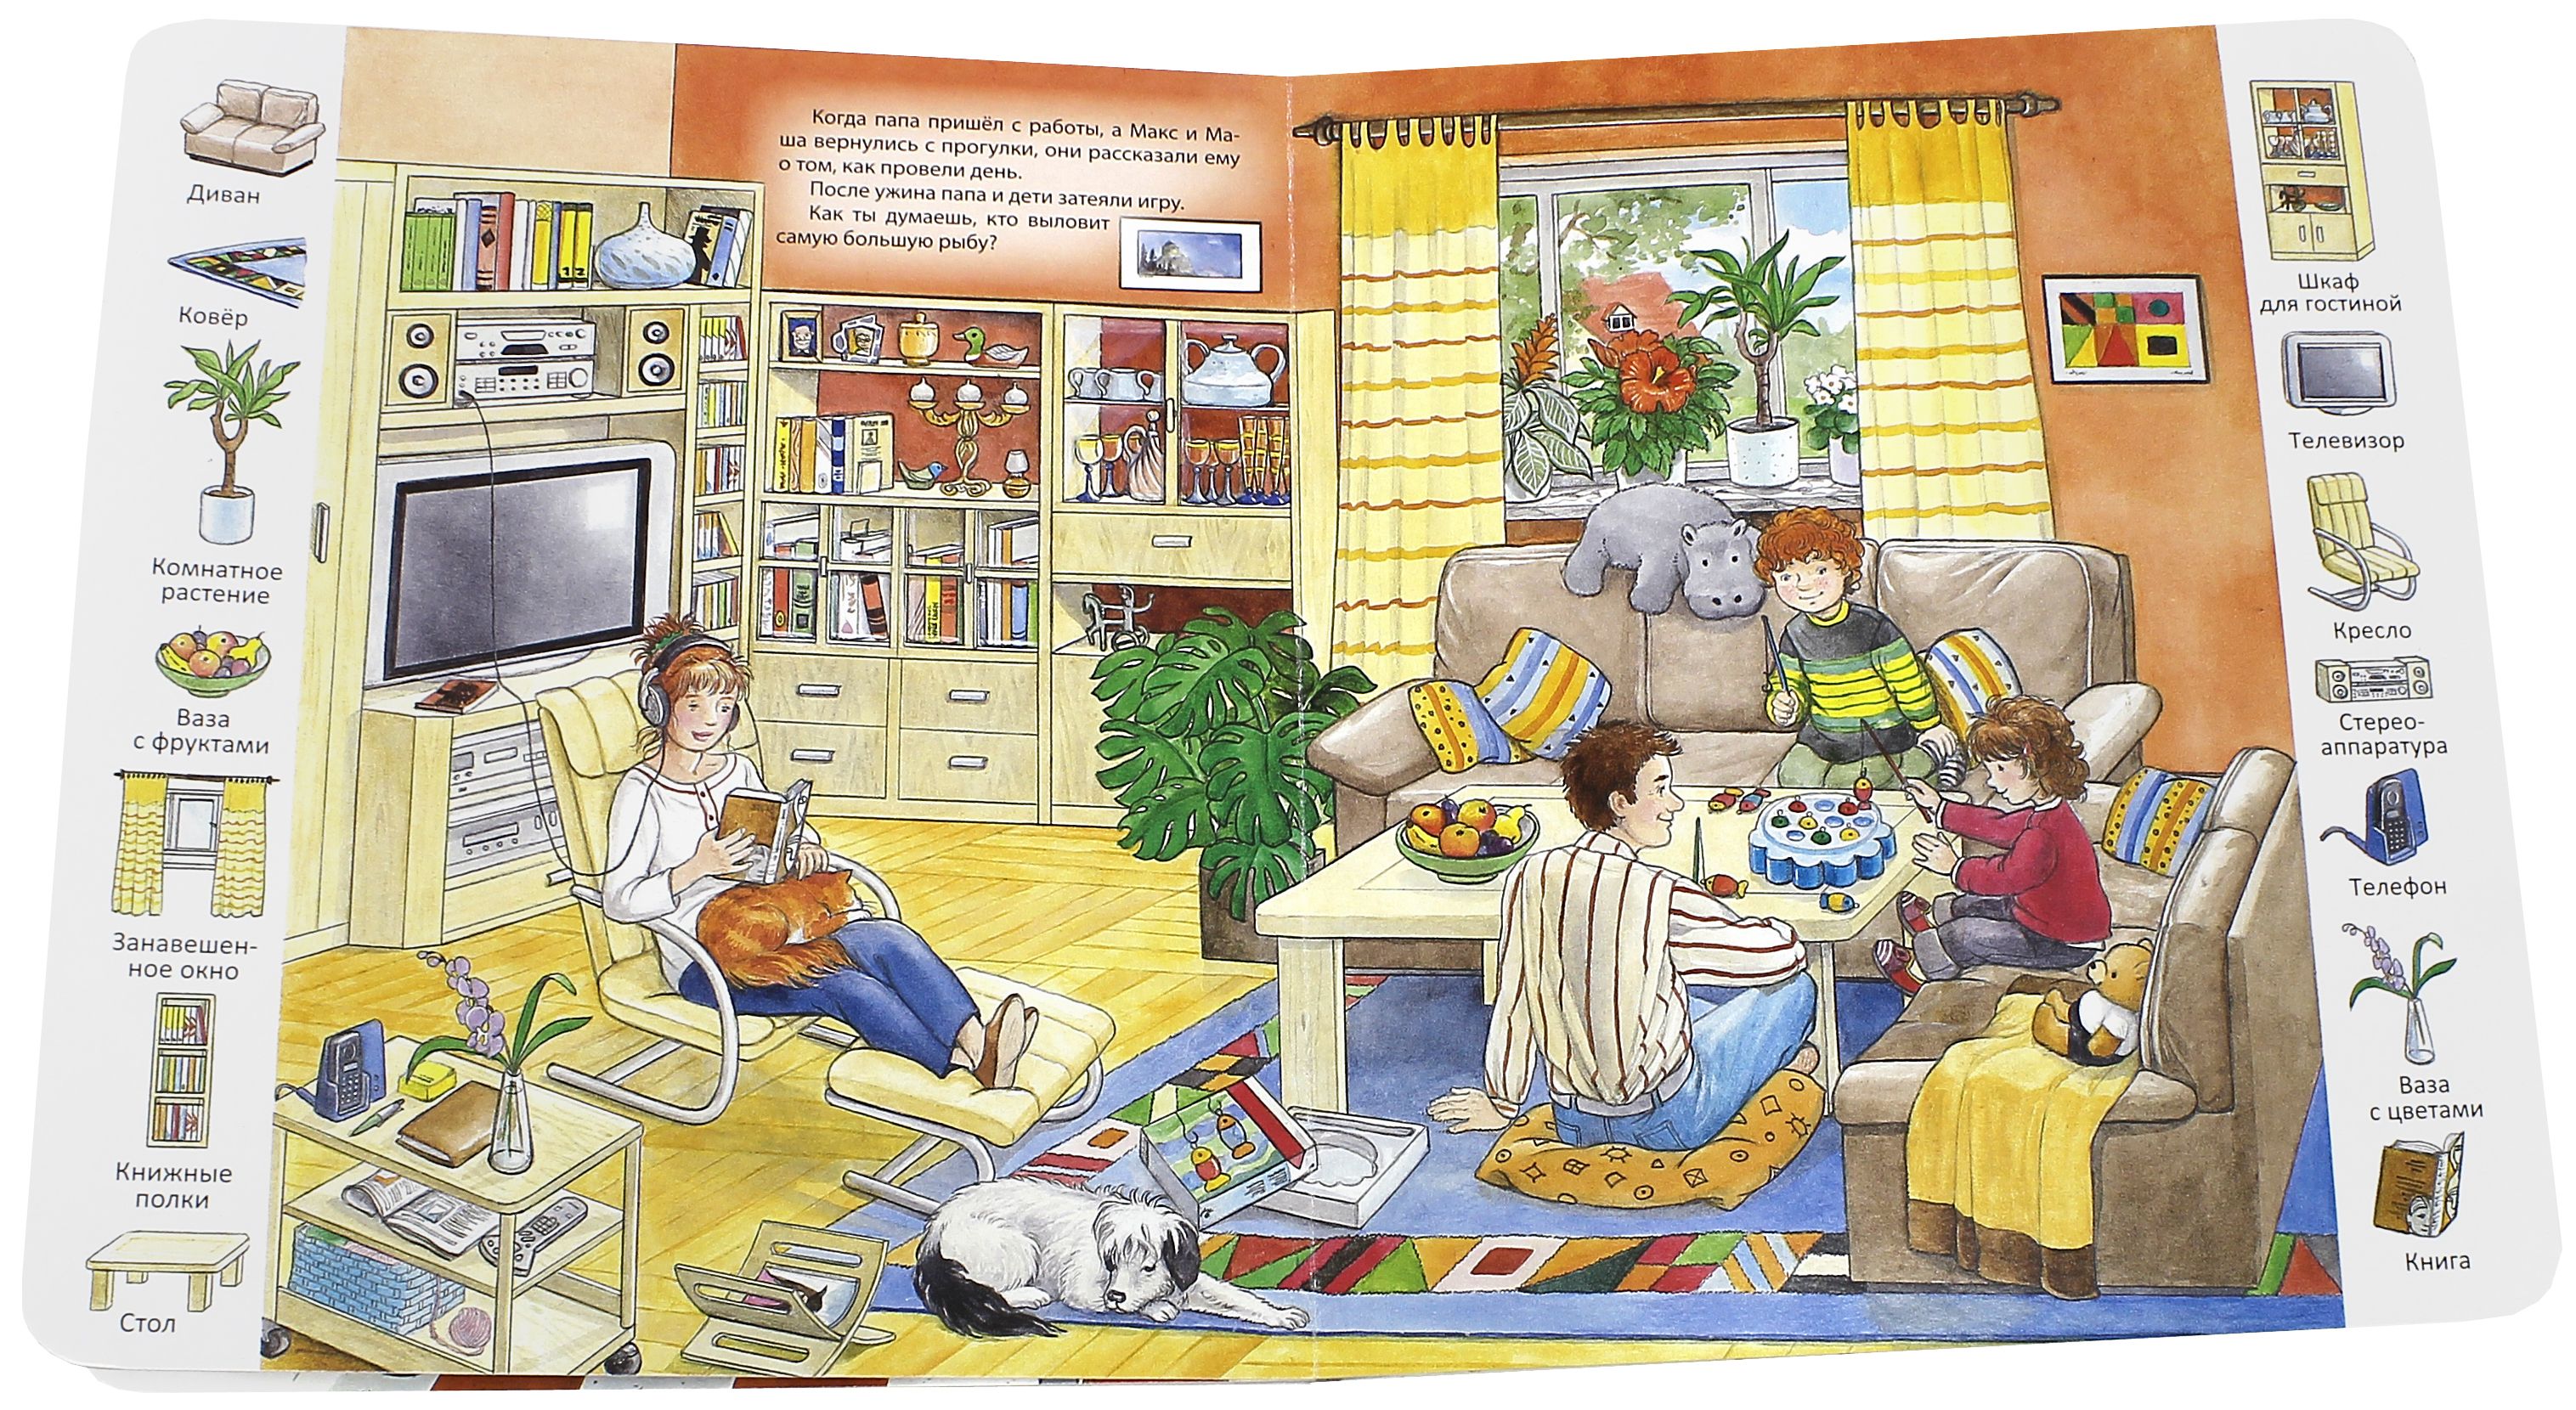 Читать рассказ квартира. Сюжетная картина моя квартира для детей. Картинка квартиры для описания. Картинки квартиры для детей для описания. Картинка комнаты для описания.